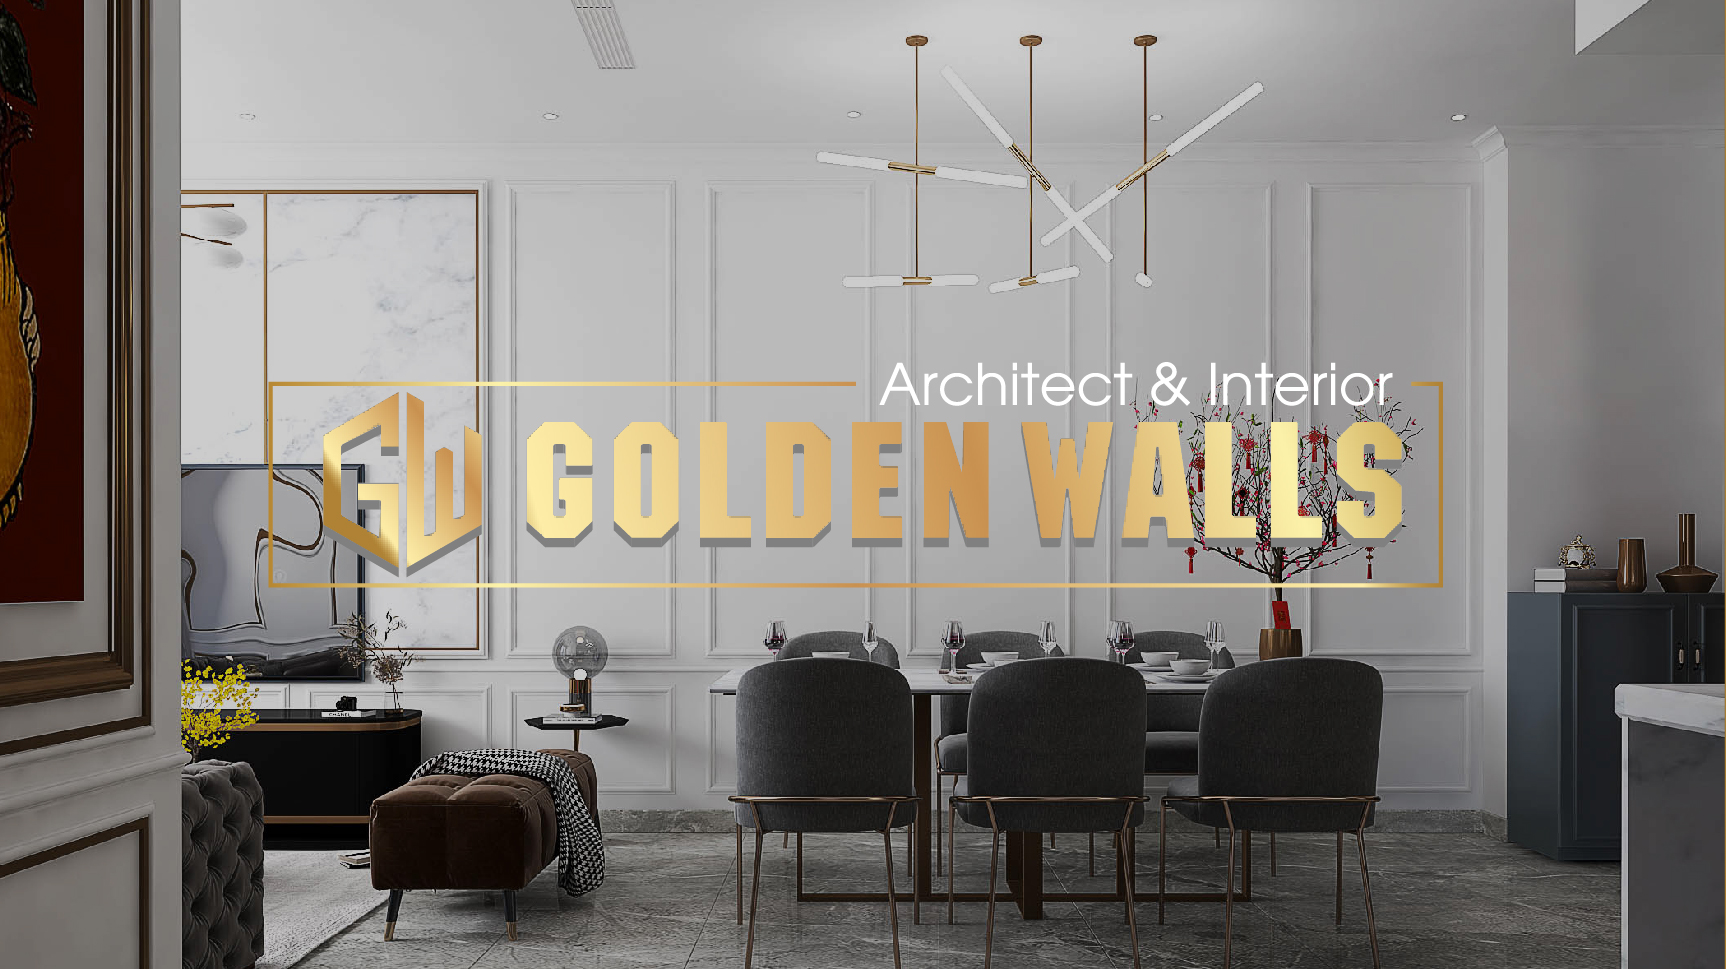 Golden Walls – Architecture & Interior